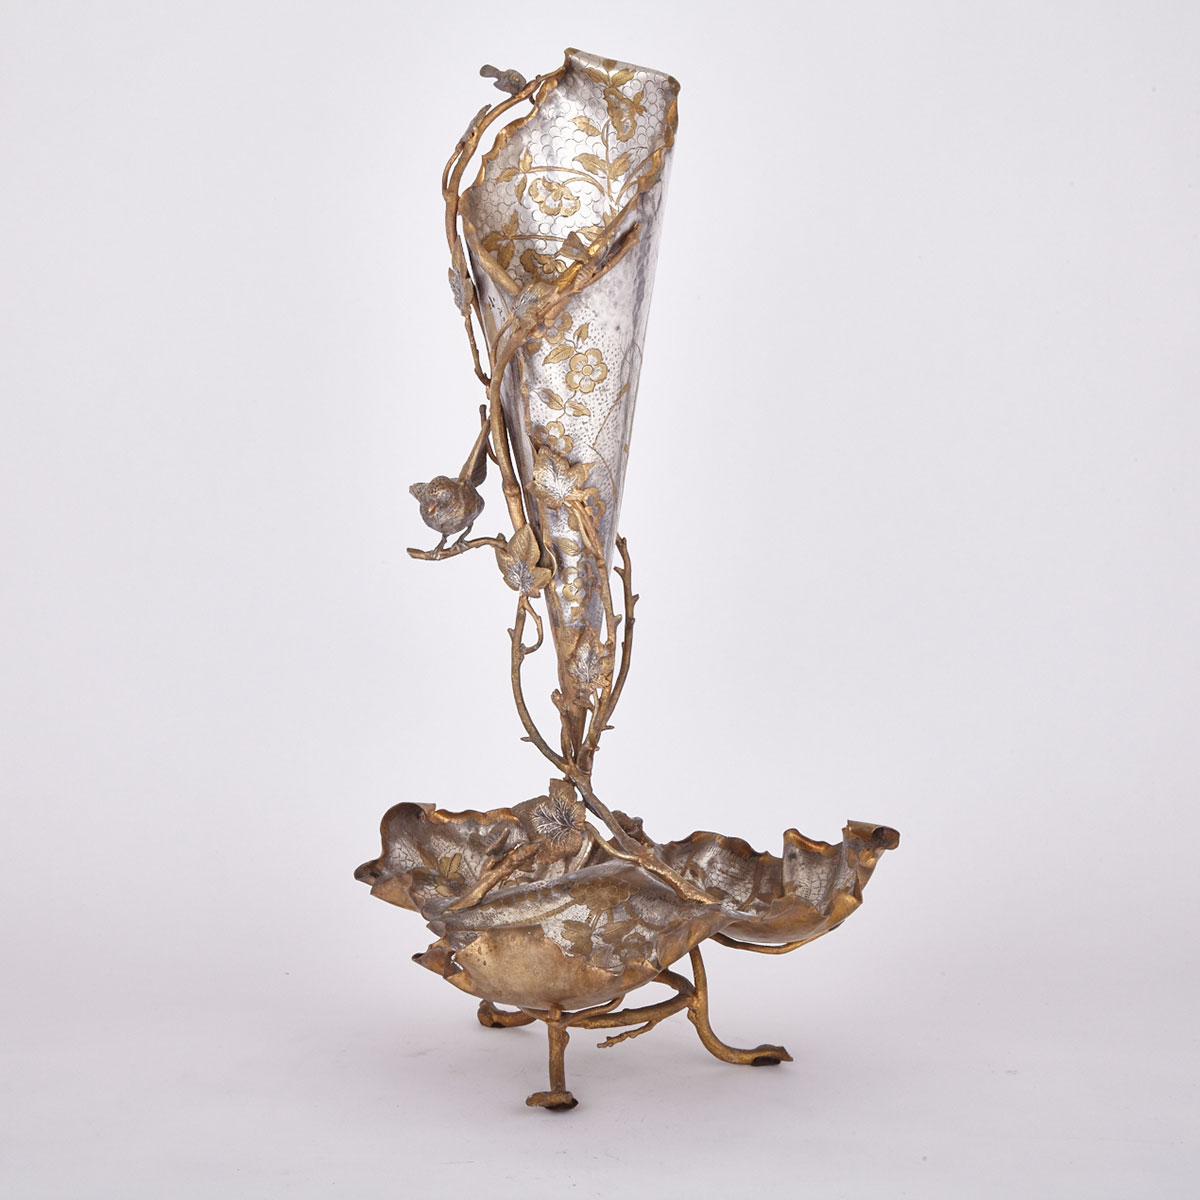 VIctorian Silver GIlt Brass Centrepiece Vase, c.1870